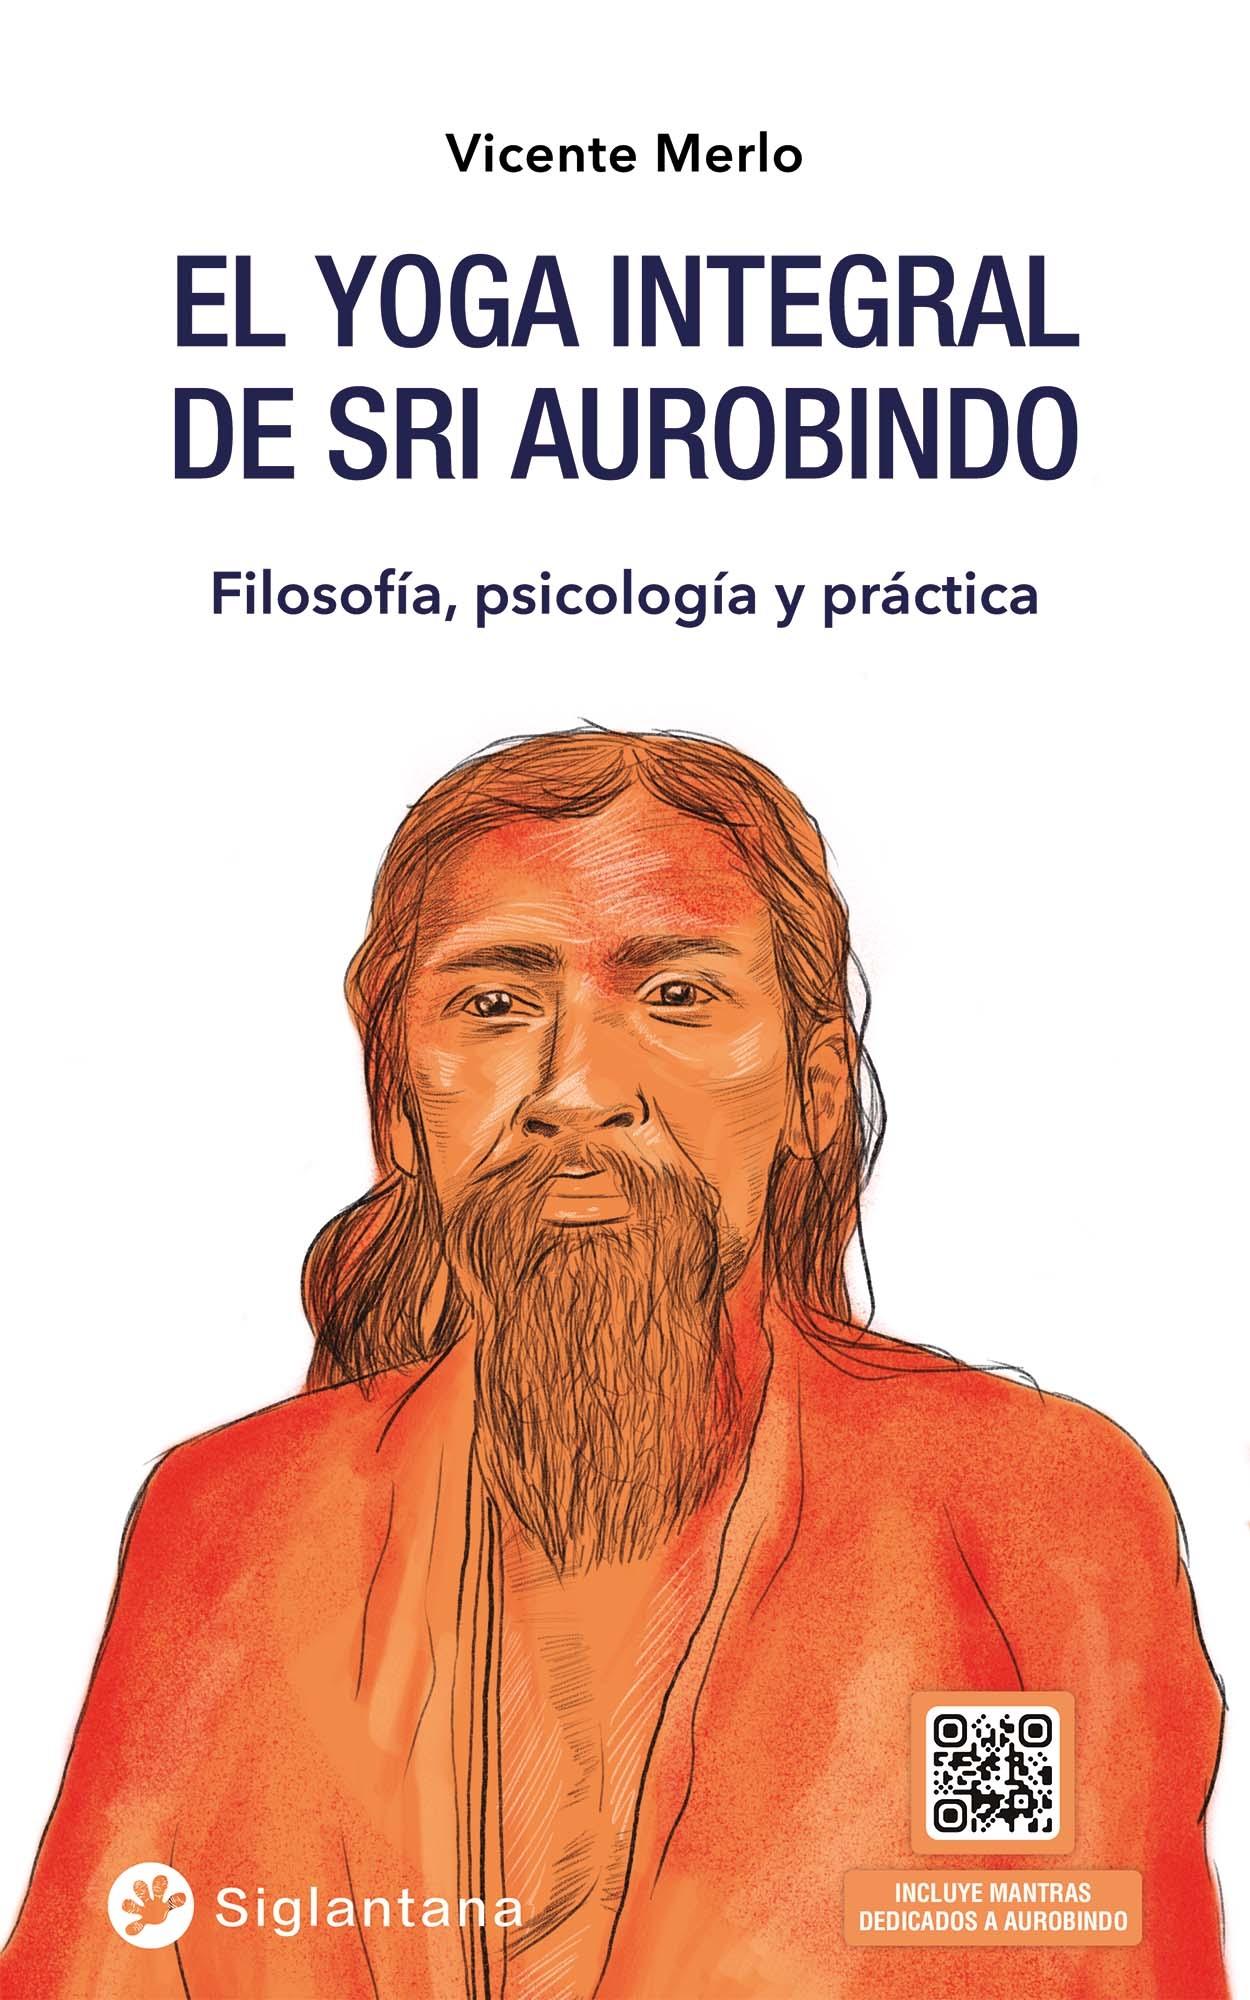 El Yoga Integral de Sri Aurobingo